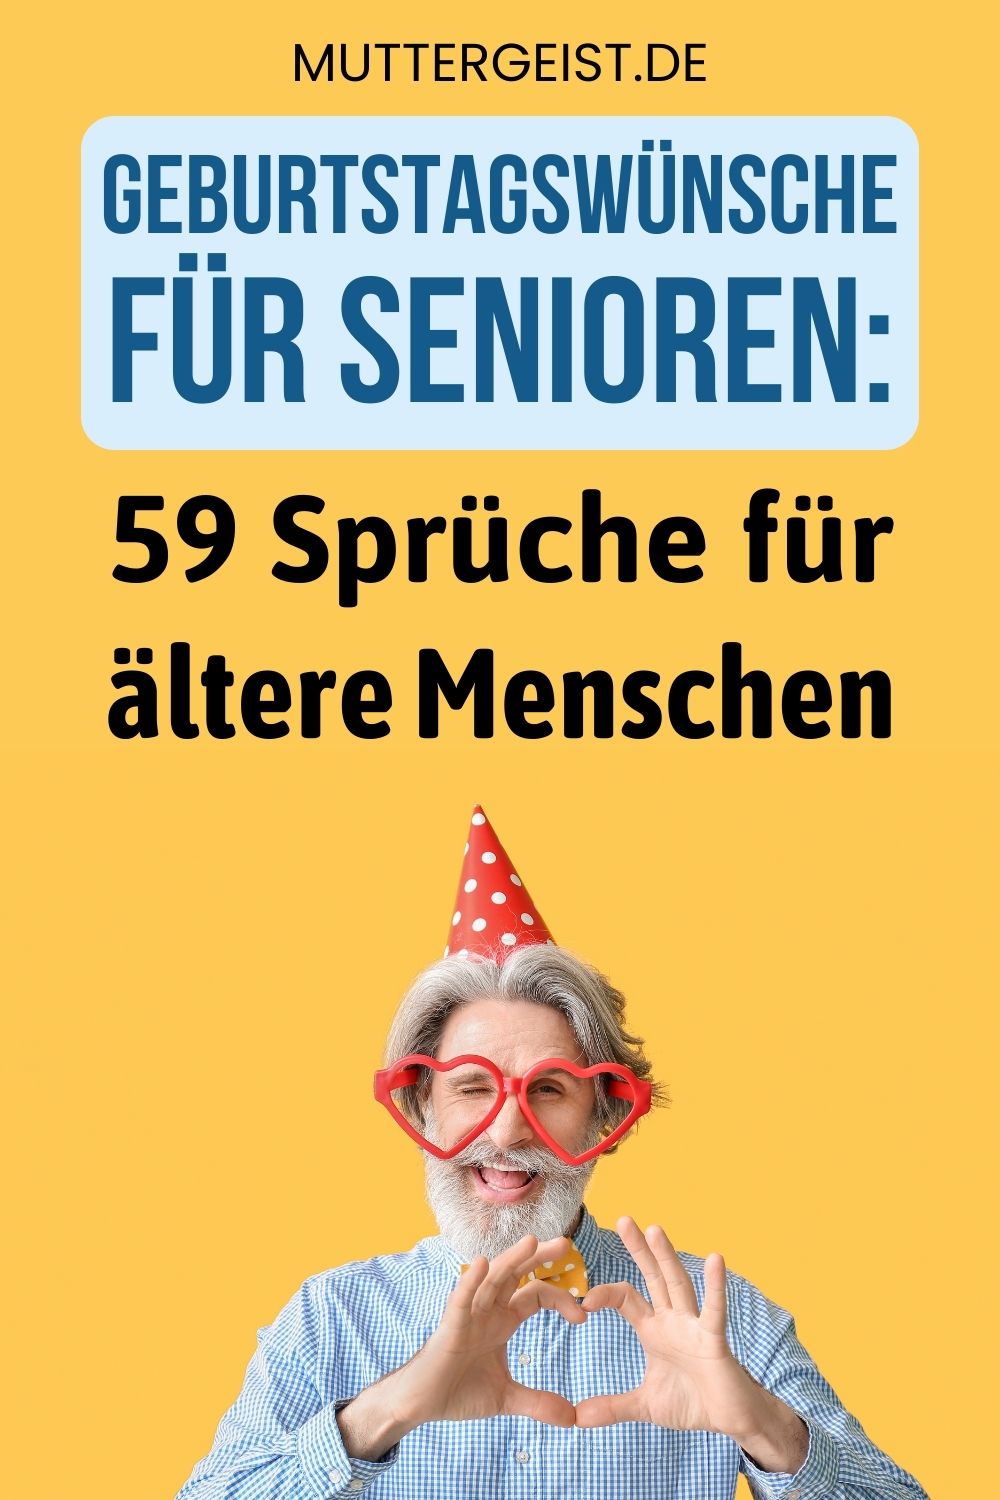 Geburtstagswünsche für Senioren – 59 Sprüche für ältere Menschen Pinterest